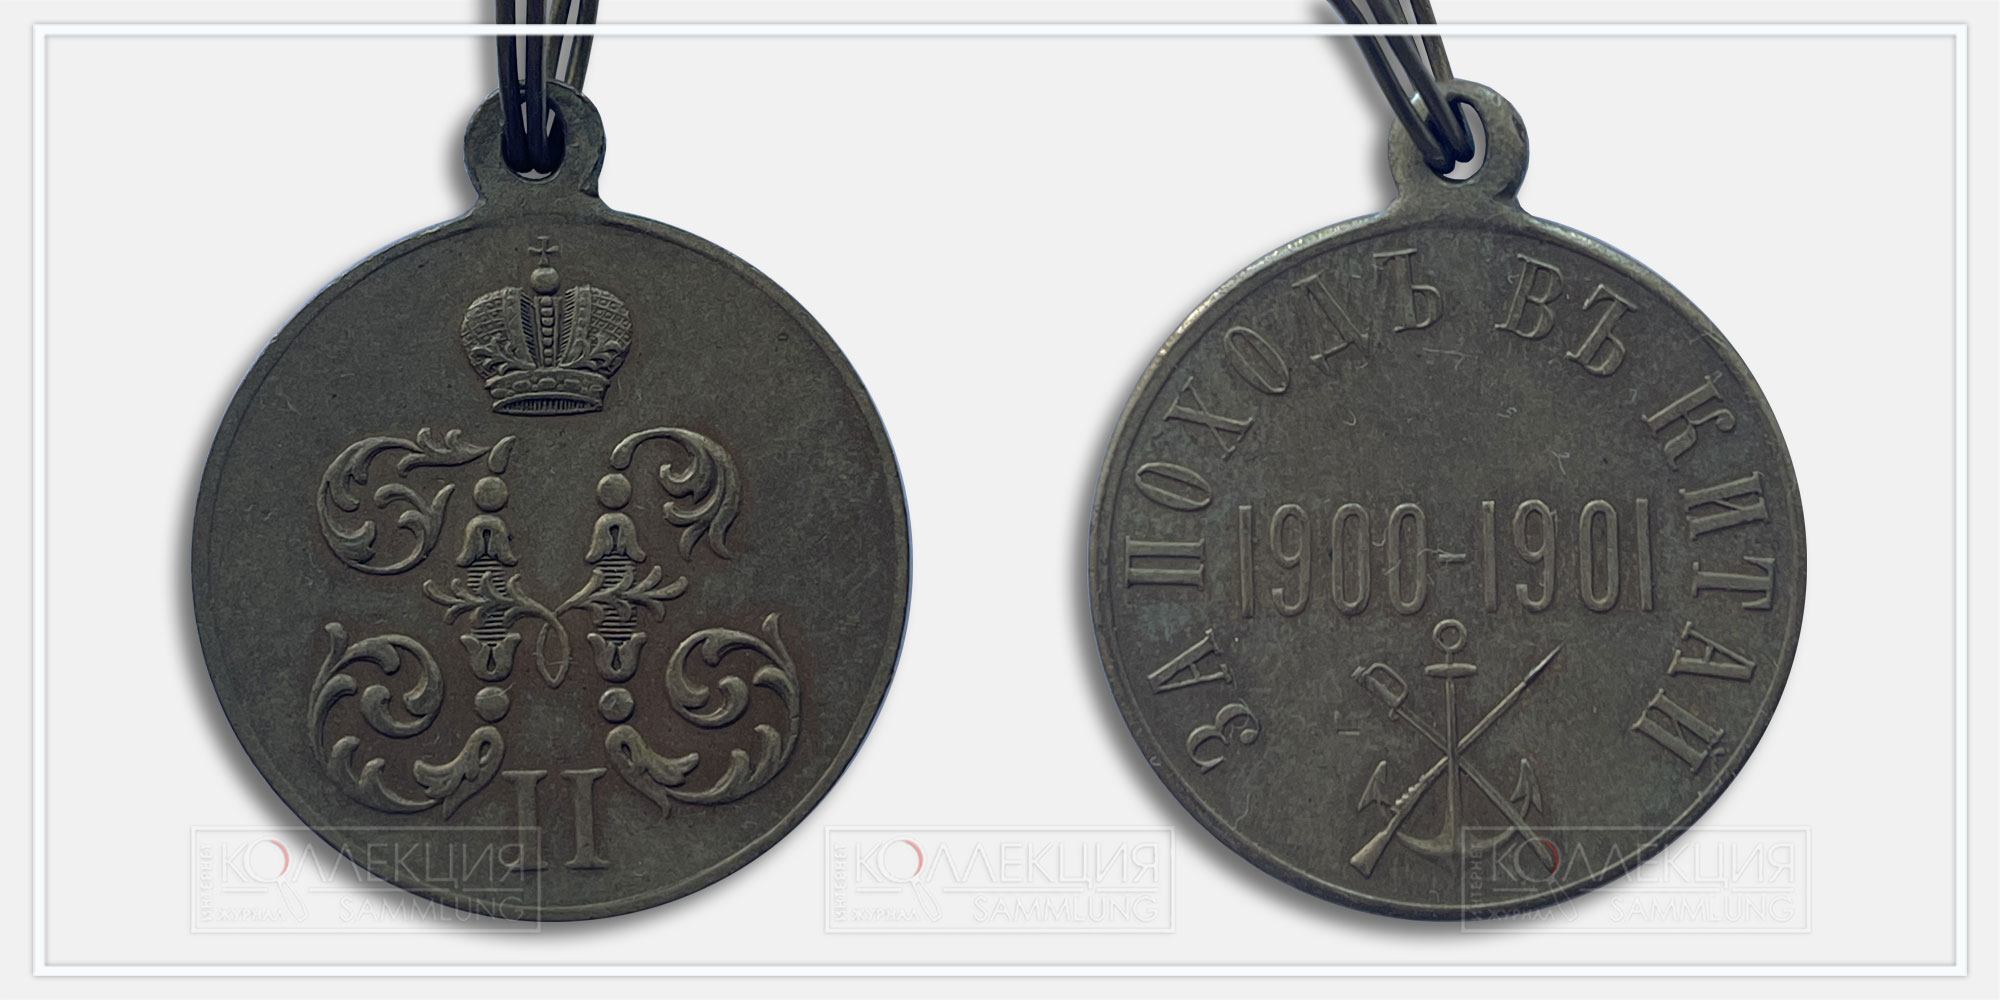 Медаль «За поход в Китай 1900-1901»